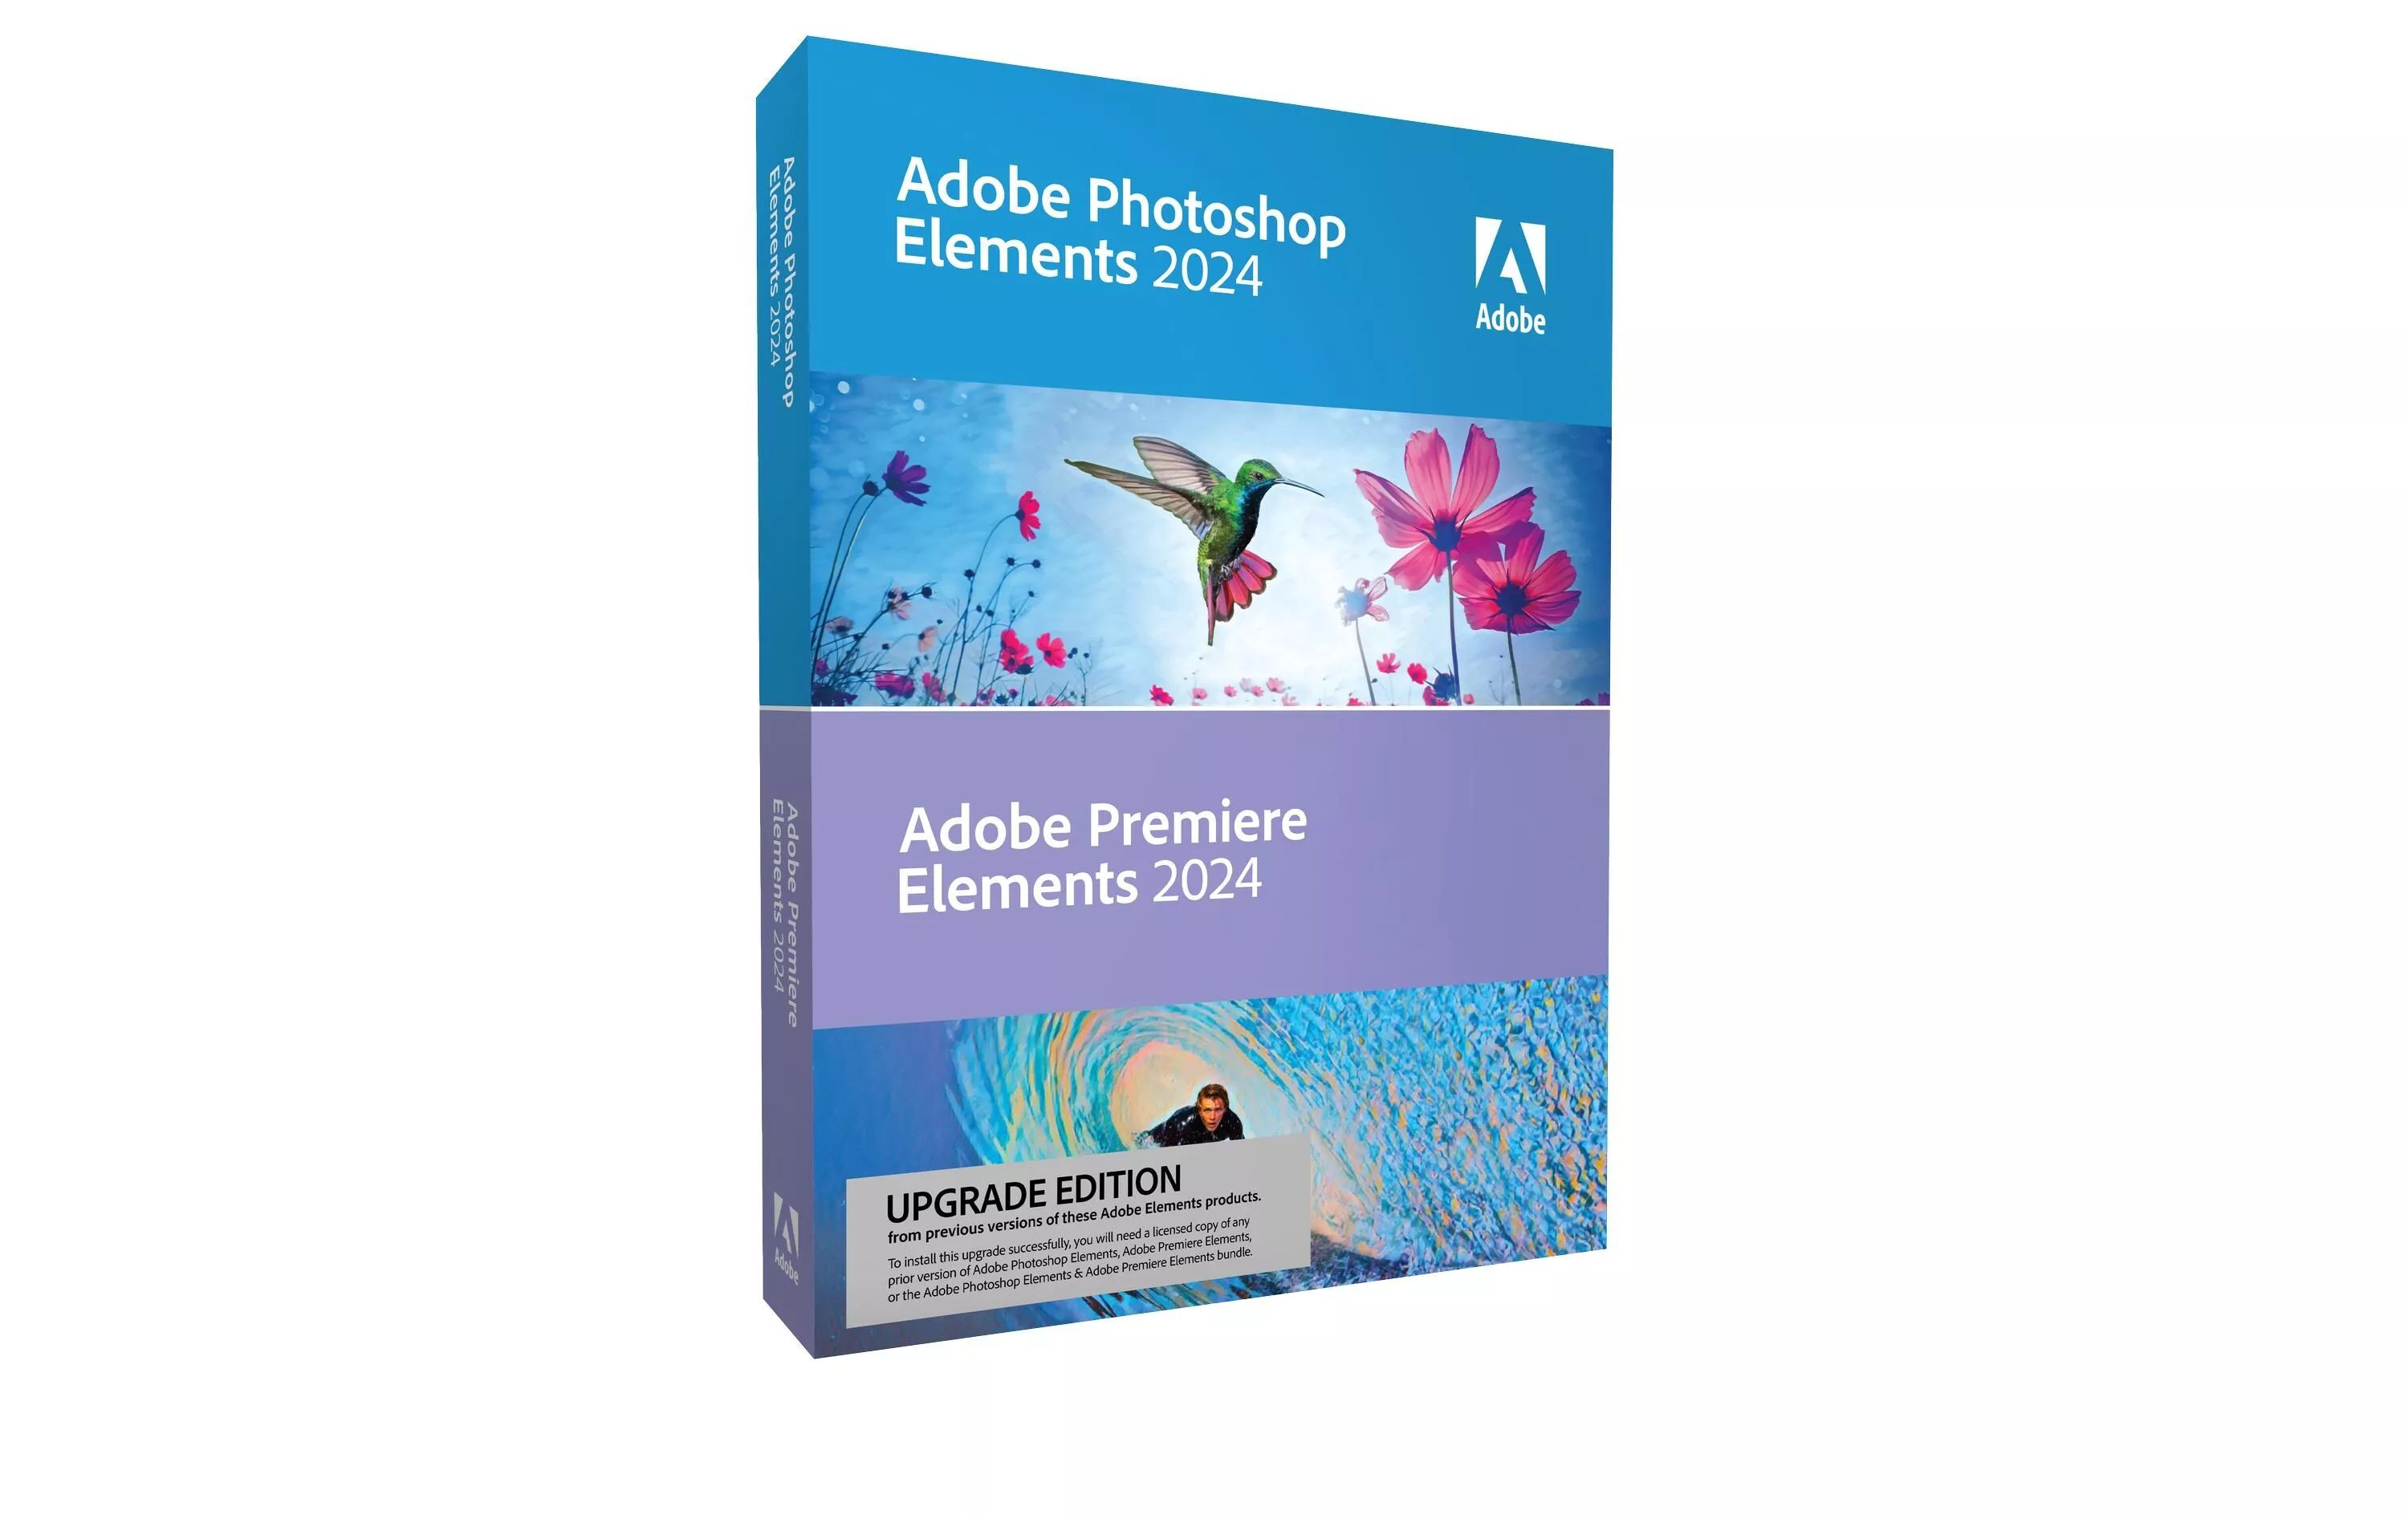 Photoshop & Premiere Elements 24 Box, Upgrade, DE